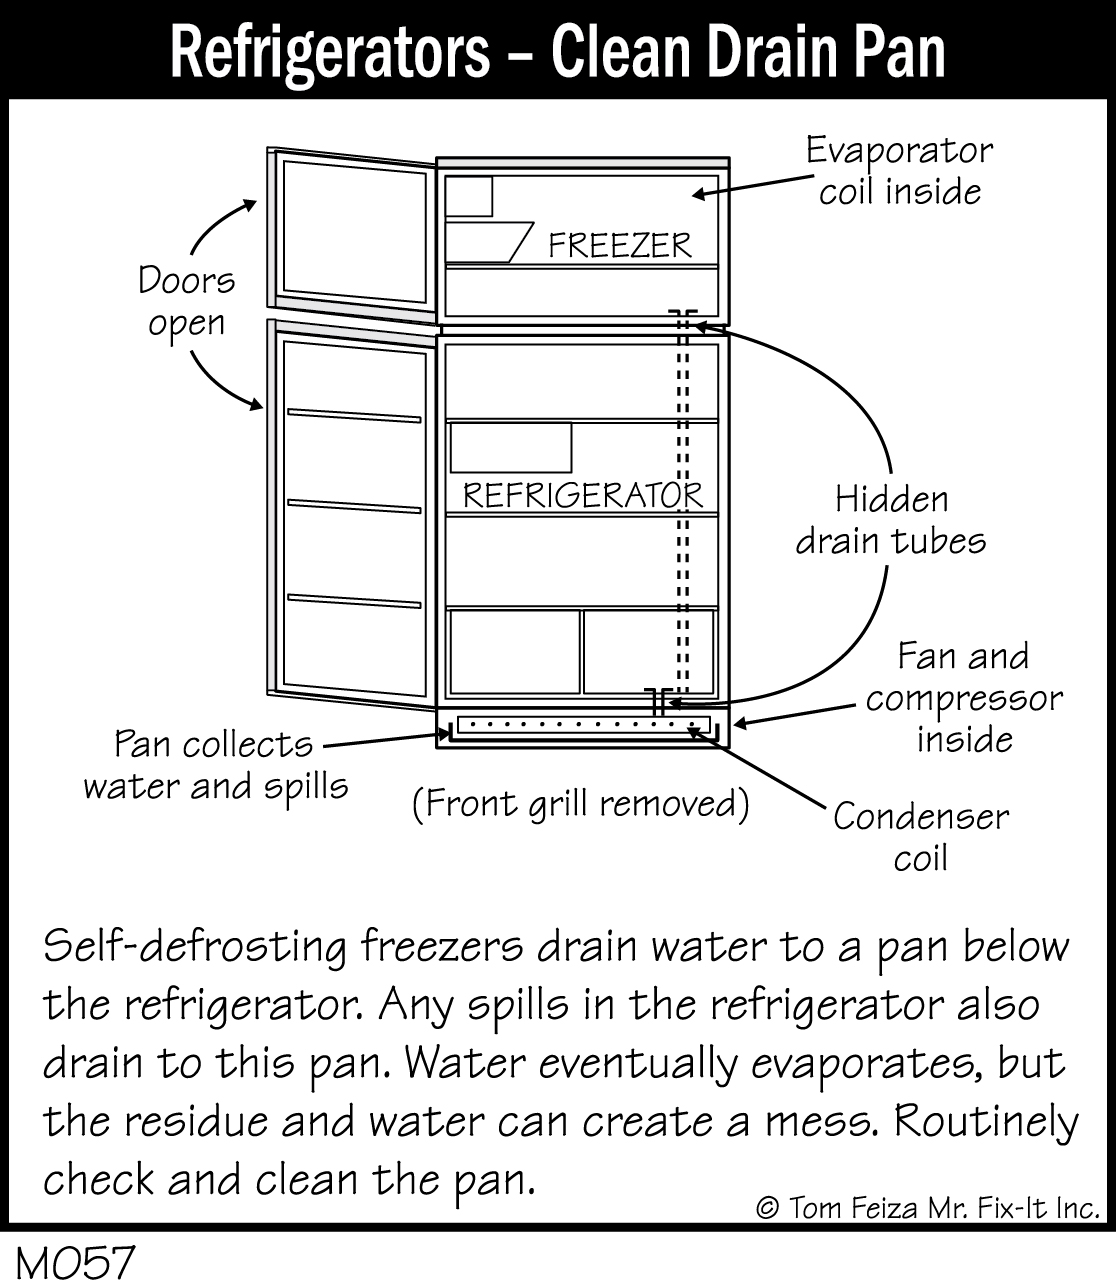 M057 - Refrigerators - Clean Drain Pan - Covered Bridge Professional ...